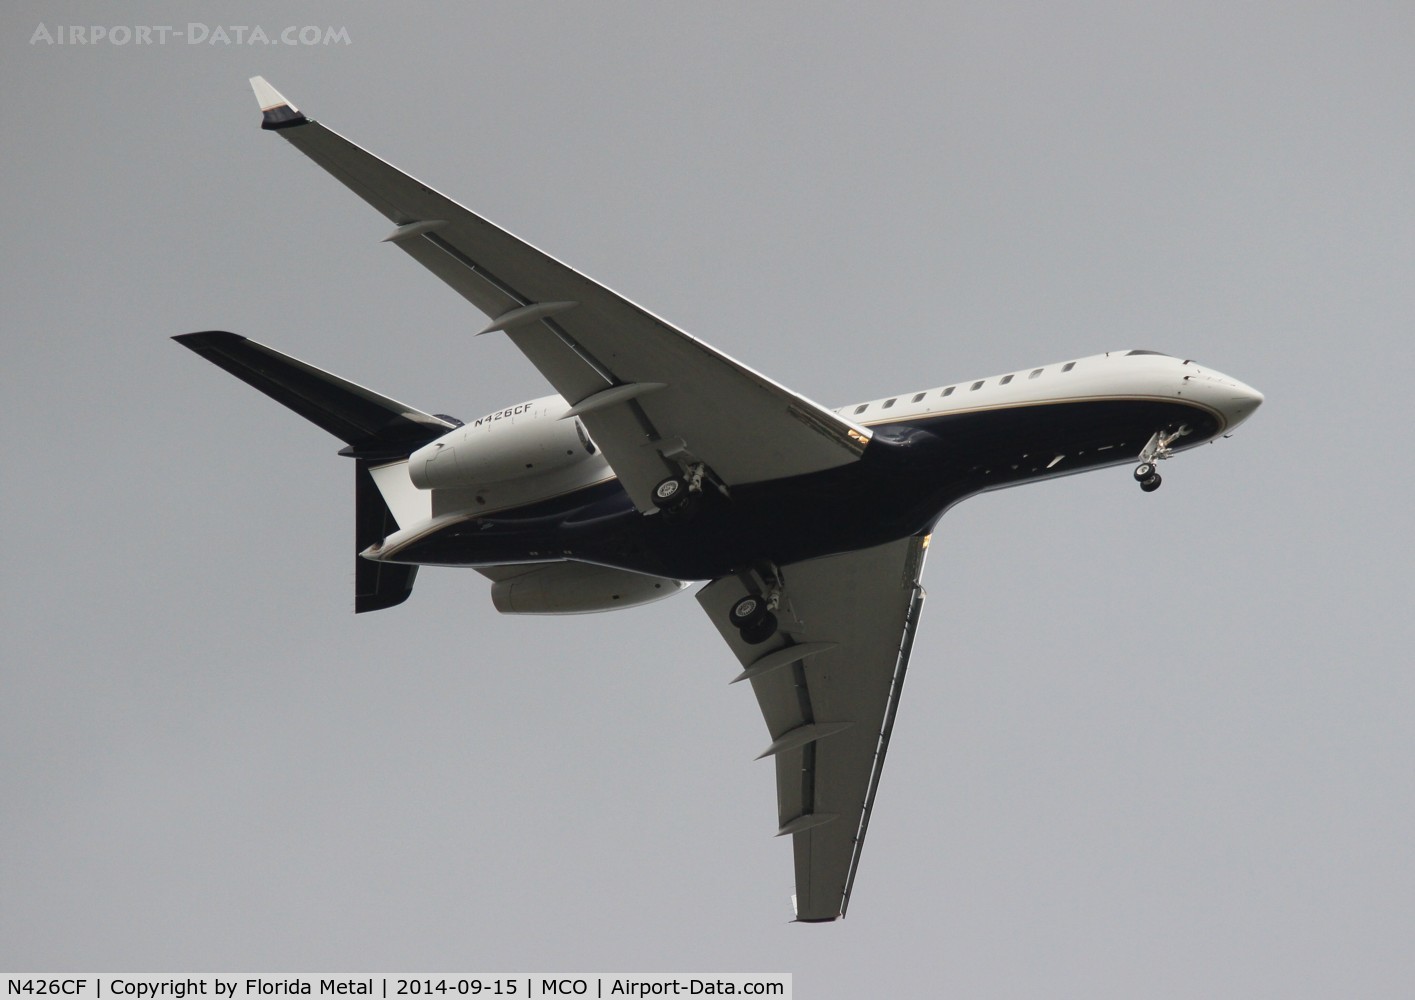 N426CF, 2007 Bombardier BD-700-1A10 Global 5000 C/N 9265, Global 5000